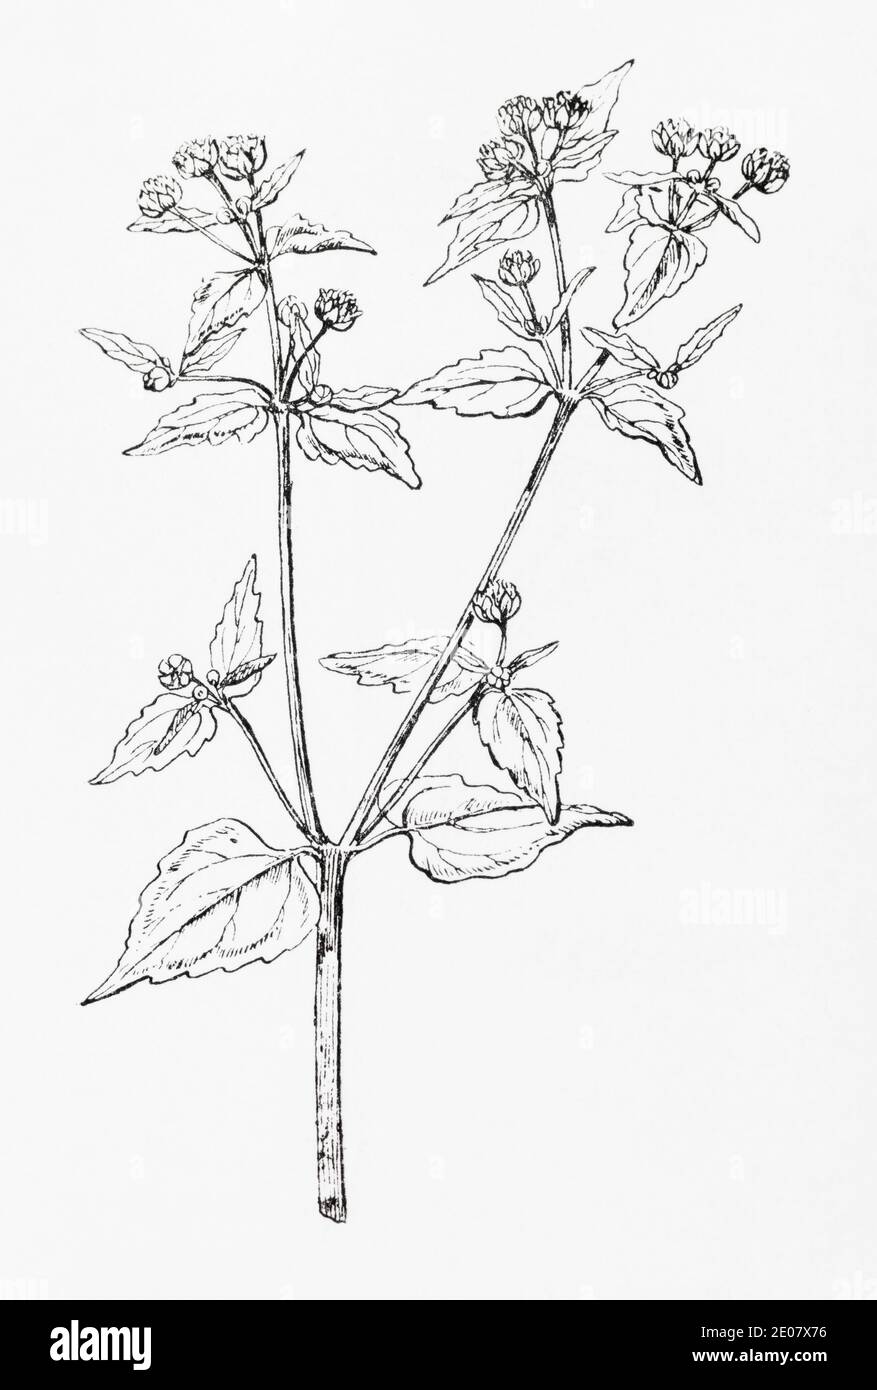 Grabado de ilustración botánica de Galant Soldier / Galinsoga parviflora. Planta herbaria medicinal tradicional. Ver Notas Foto de stock